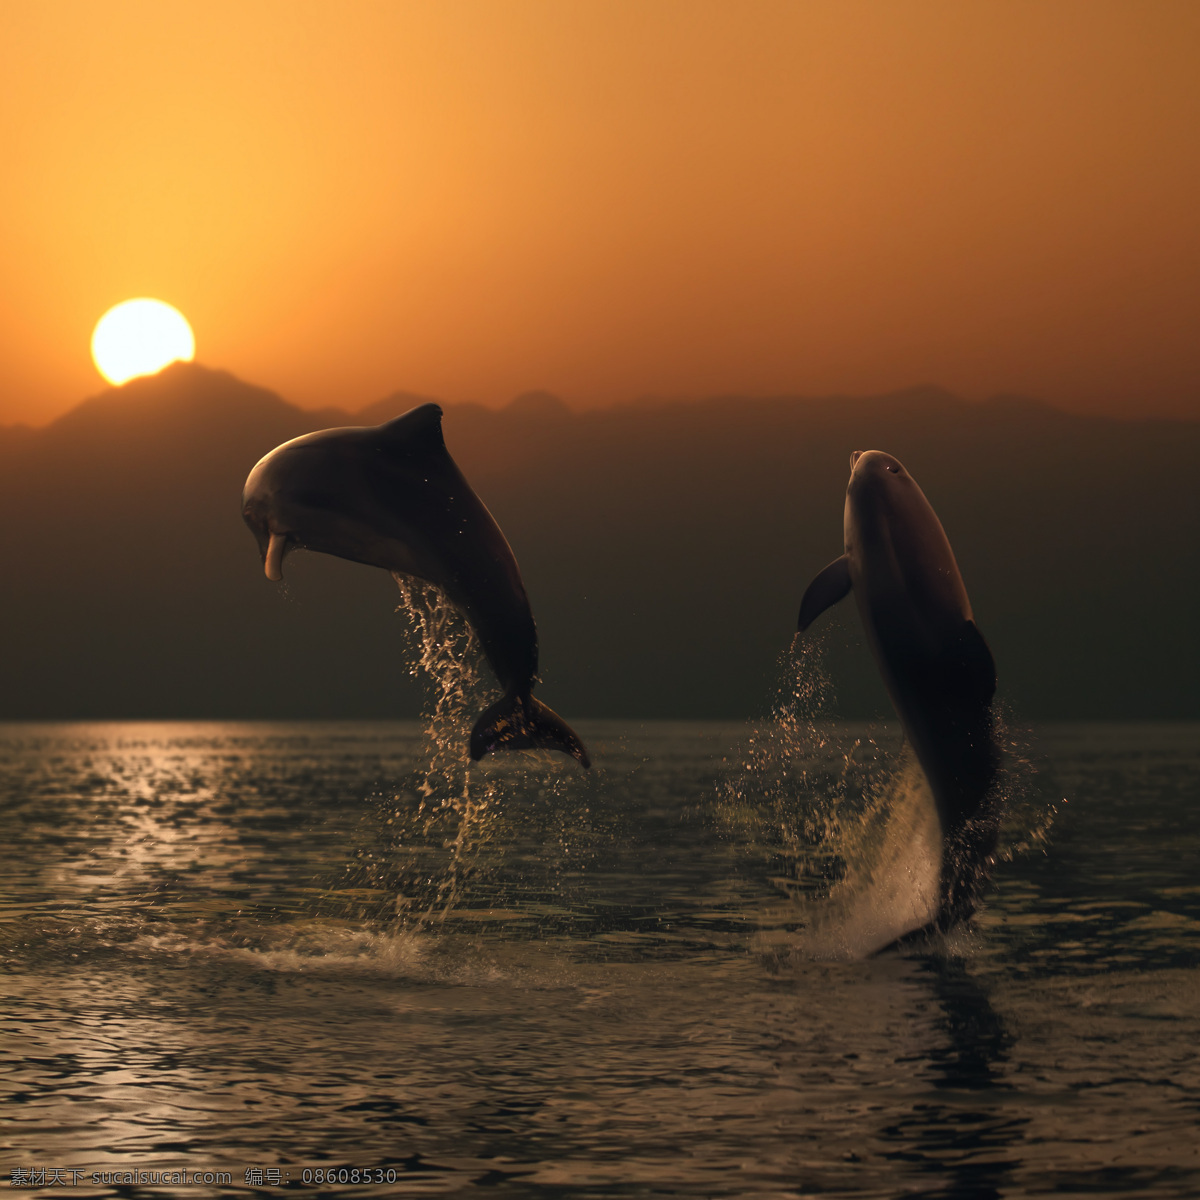 海洋 里 跳出 两 只 海豚 跳跃的海豚 天空 蓝天白云 晴朗 海面 大海 海天一线 两只海豚 跳跃 日出 日落 山 高山 高清图片 水中生物 生物世界